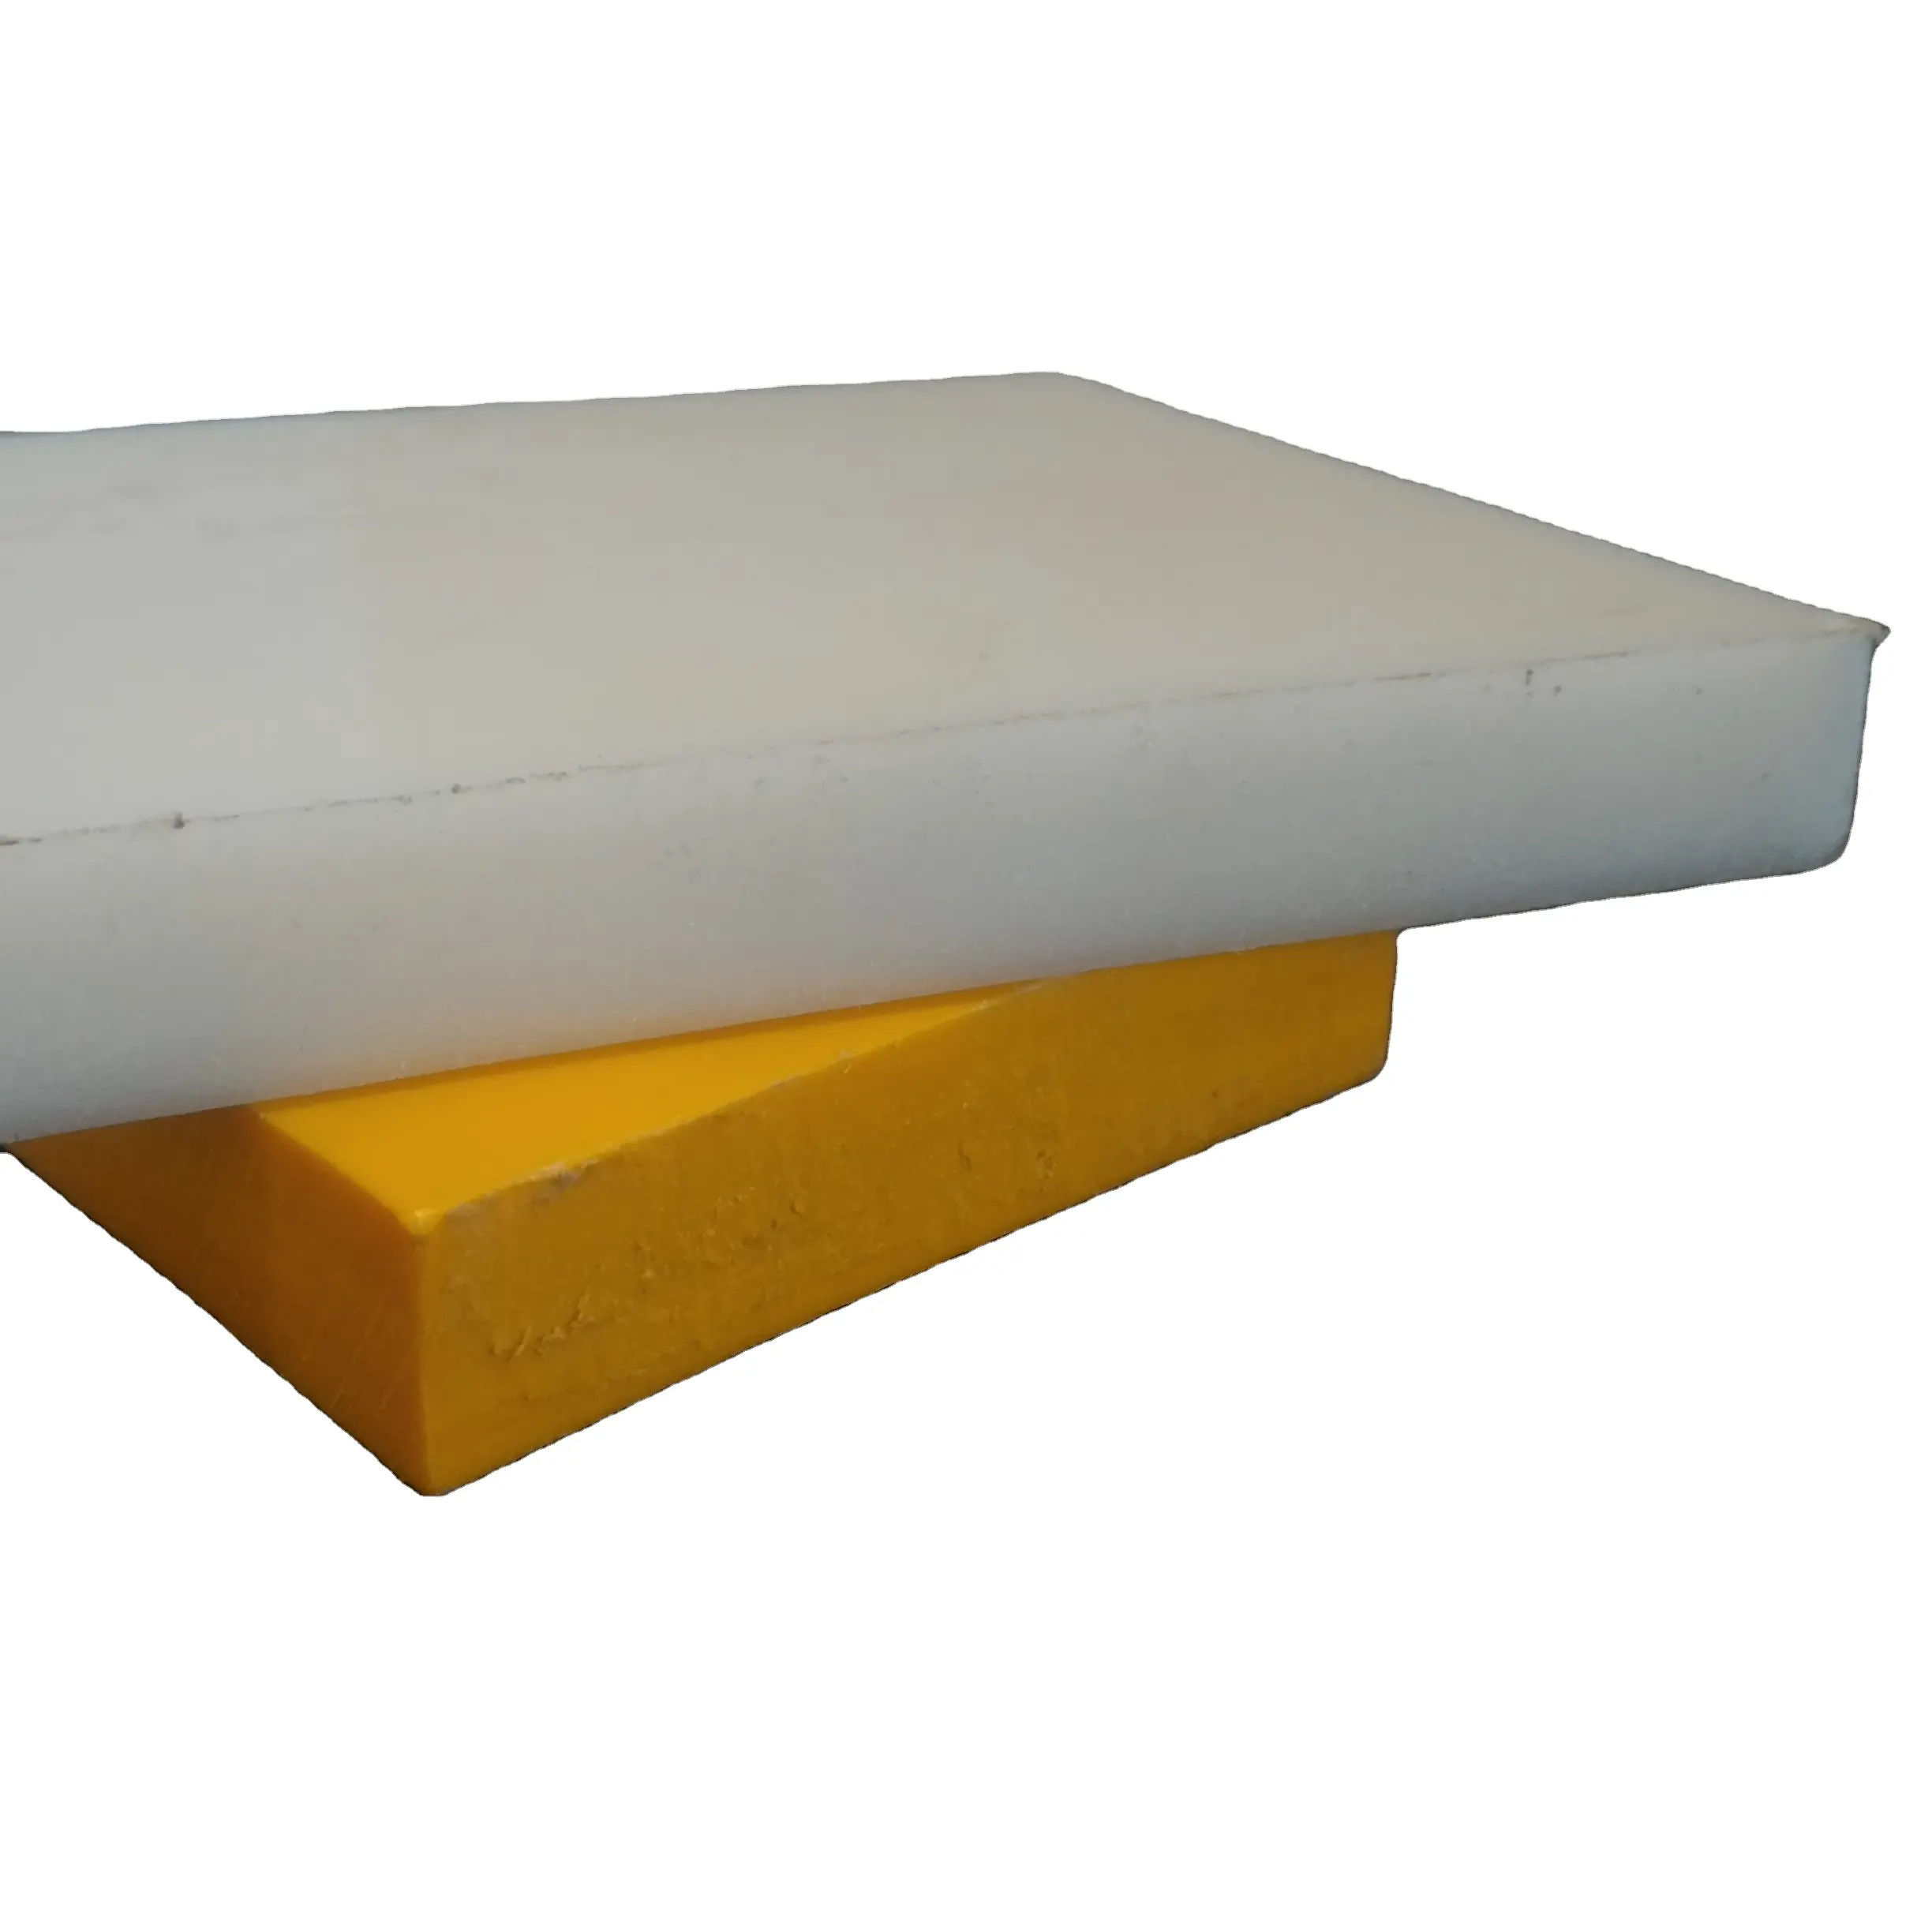 UP 버진 등급 플라스틱 시트 uhmwpe 솔리드 시트 화이트 컬러 2 ~ 100 mm 두께 강한 폴리머 iso 9001:2015 인증 회사